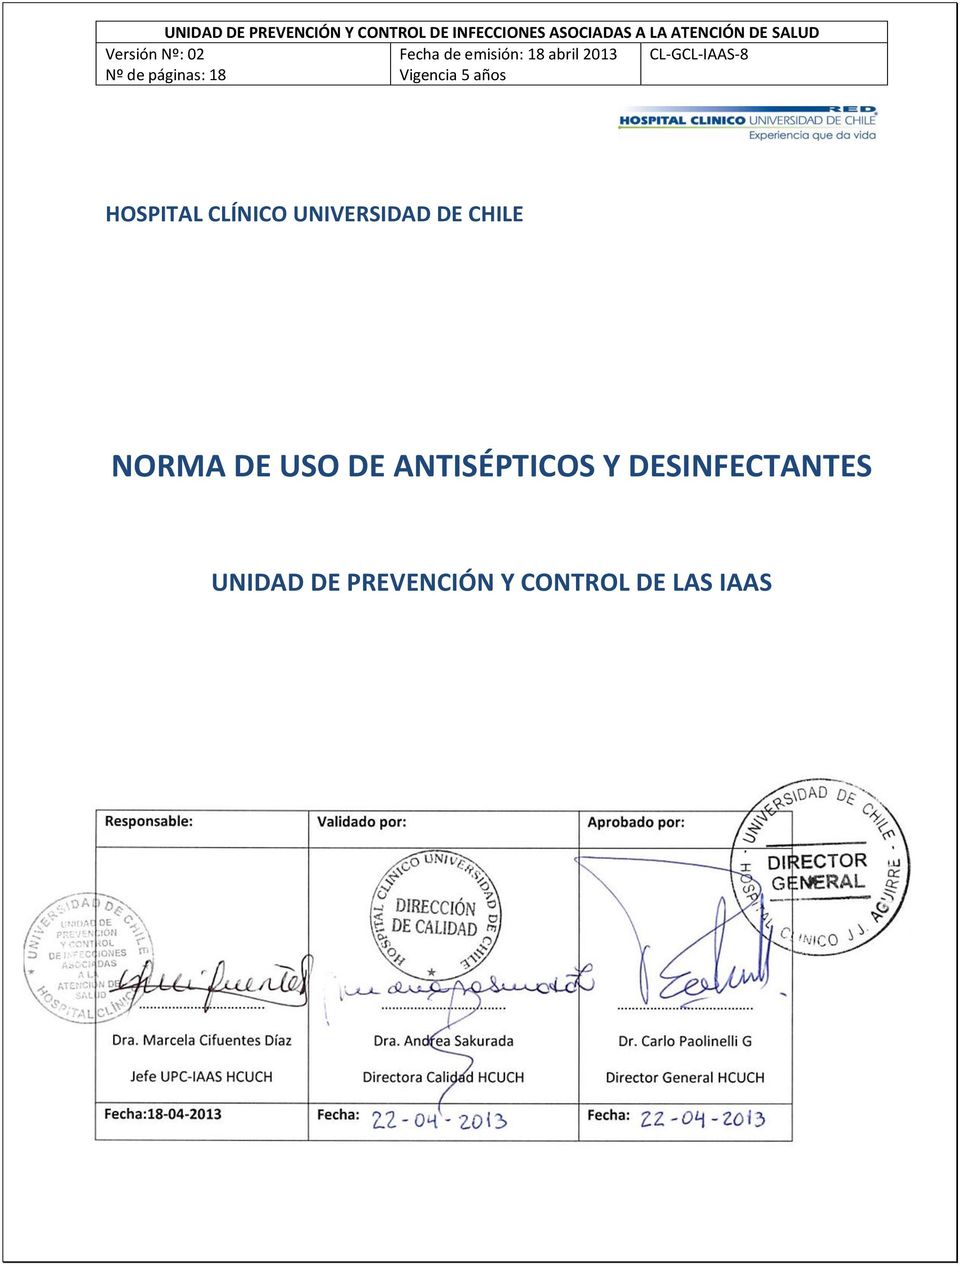 Vigencia 5 años CL-GCL-IAAS-8 HOSPITAL CLÍNICO UNIVERSIDAD DE CHILE NORMA